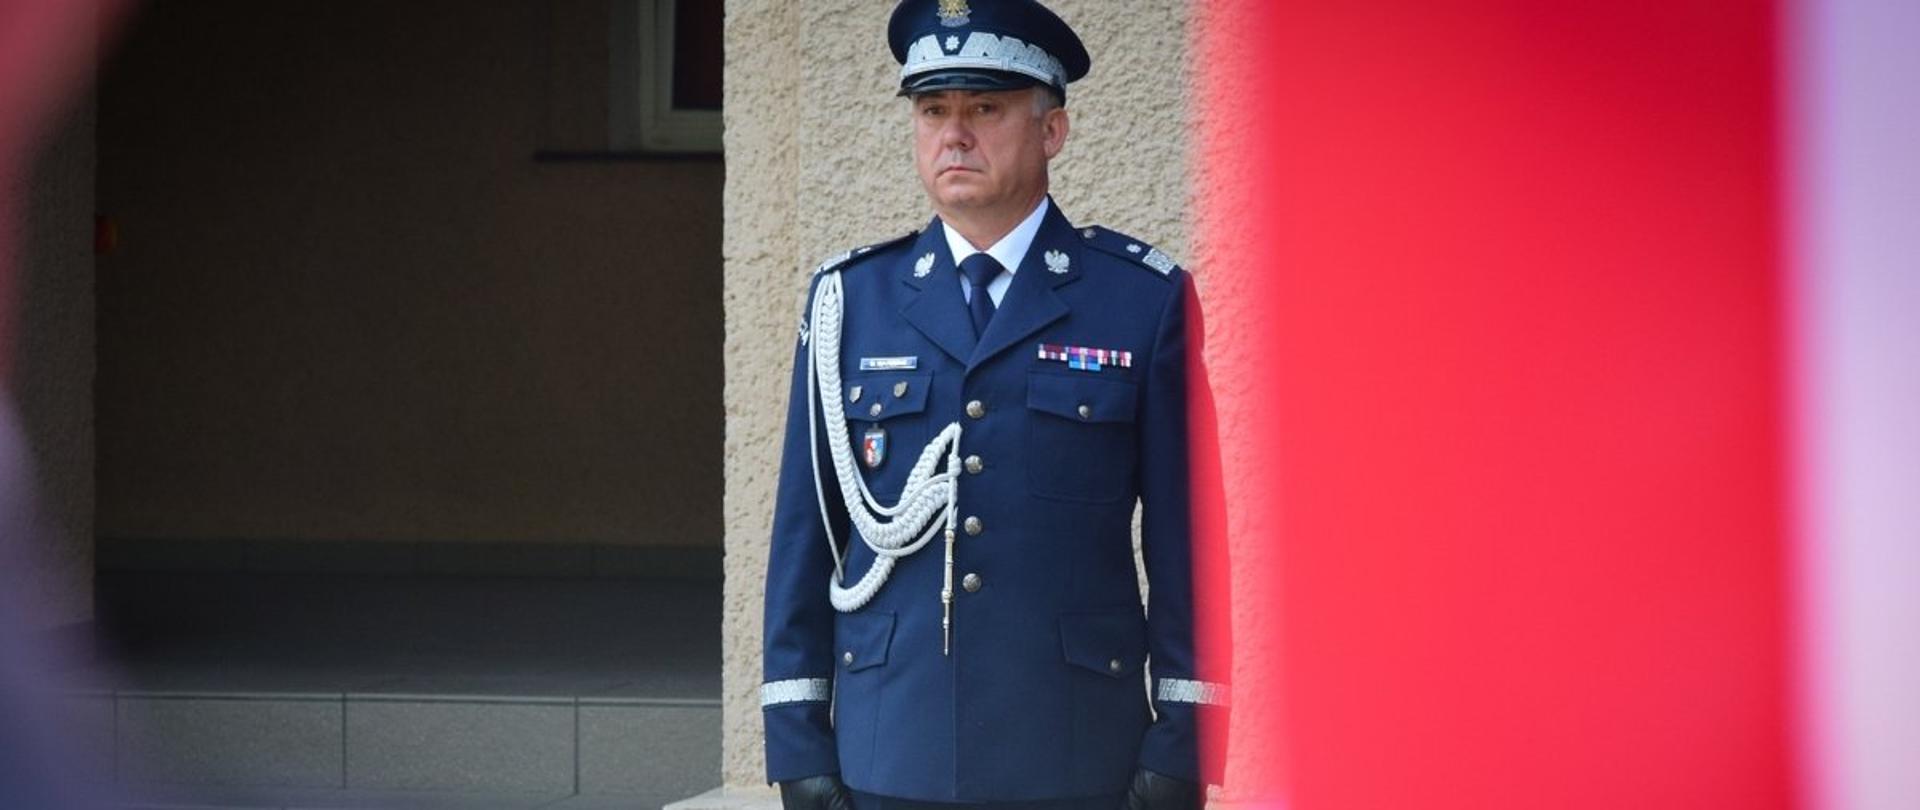 Nadinspektor Dariusz Matusiak podczas uroczystego przywitania przed budynkiem Komendy Wojewódzkiej Policji w Rzeszowie 